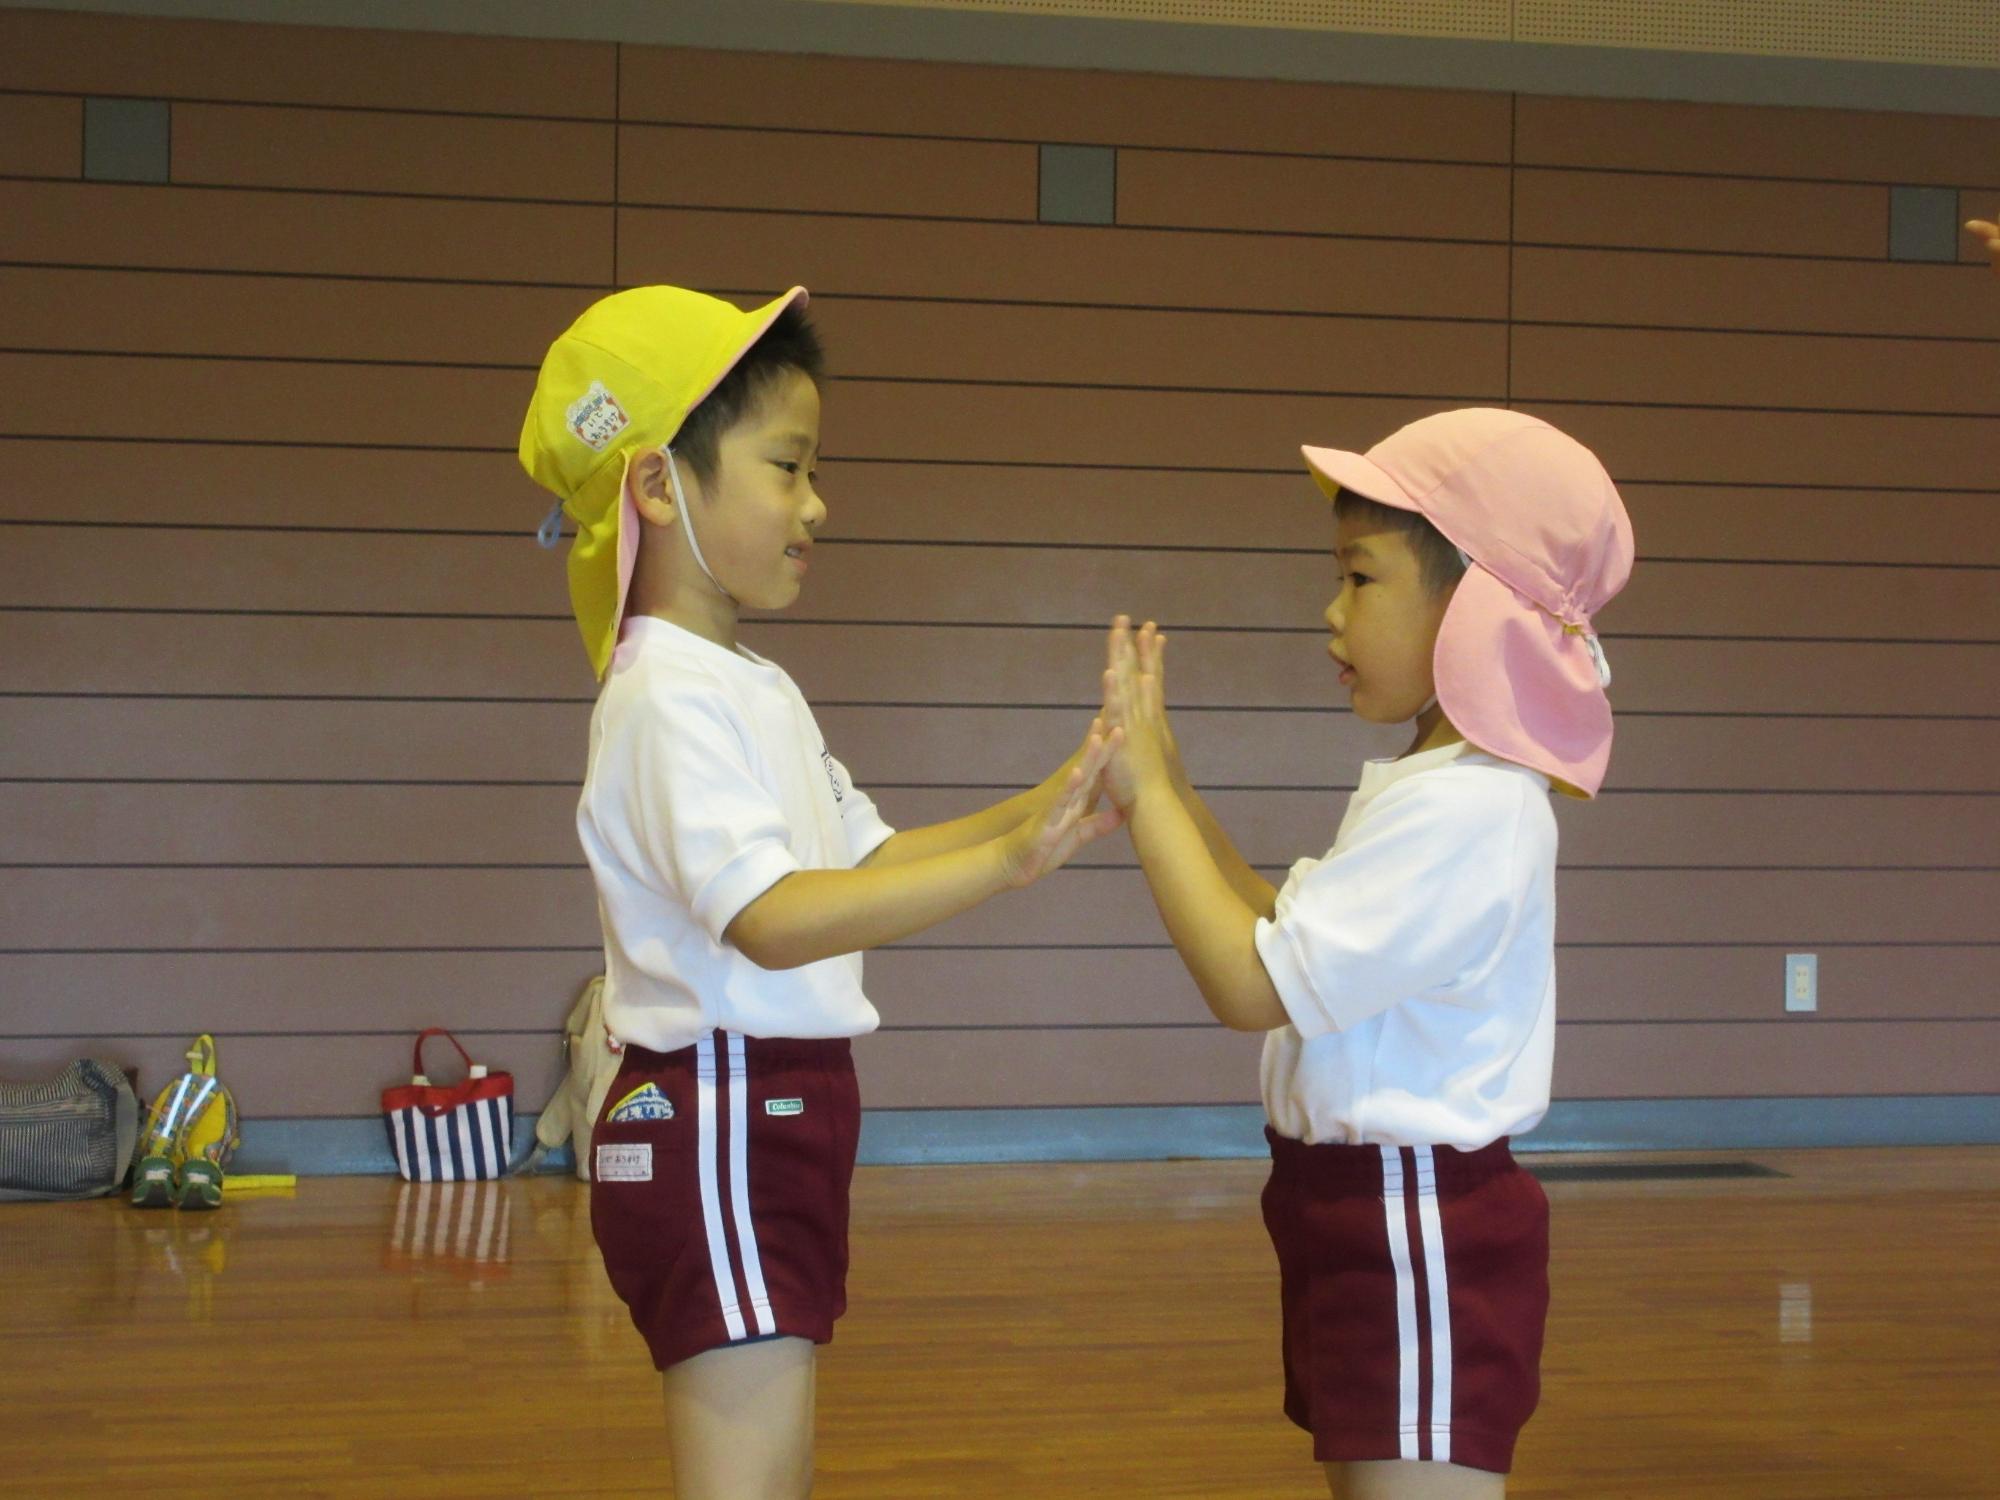 ピンクの帽子と黄色の帽子を被った園児2名が向かい合って両手を合わせている写真